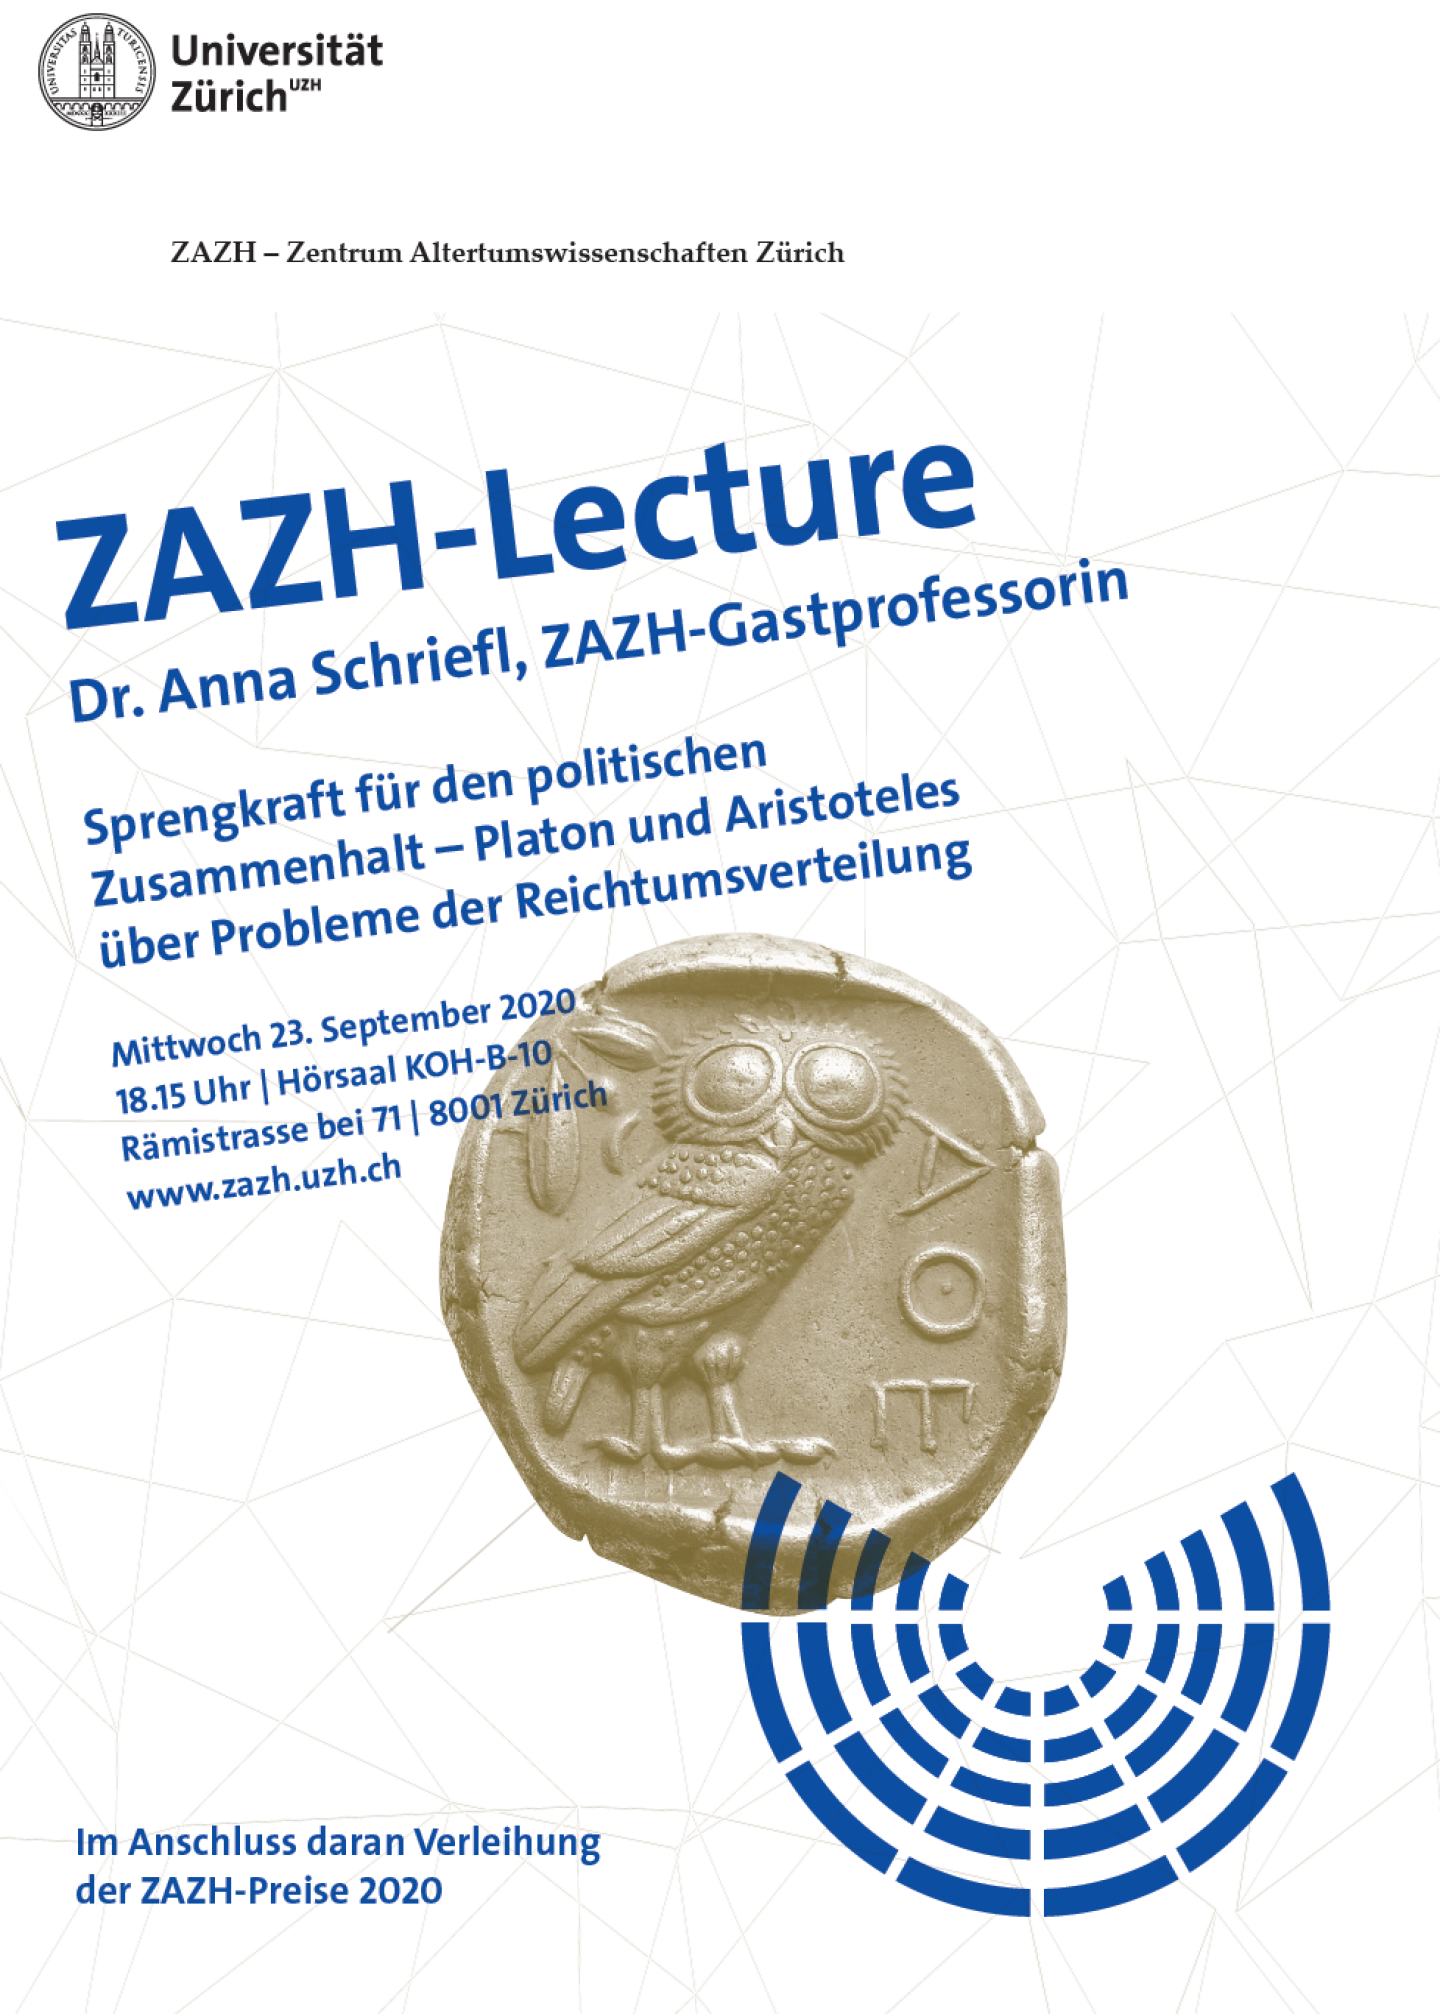 ZAZH-Lecture, Dr. Anna Schriefl